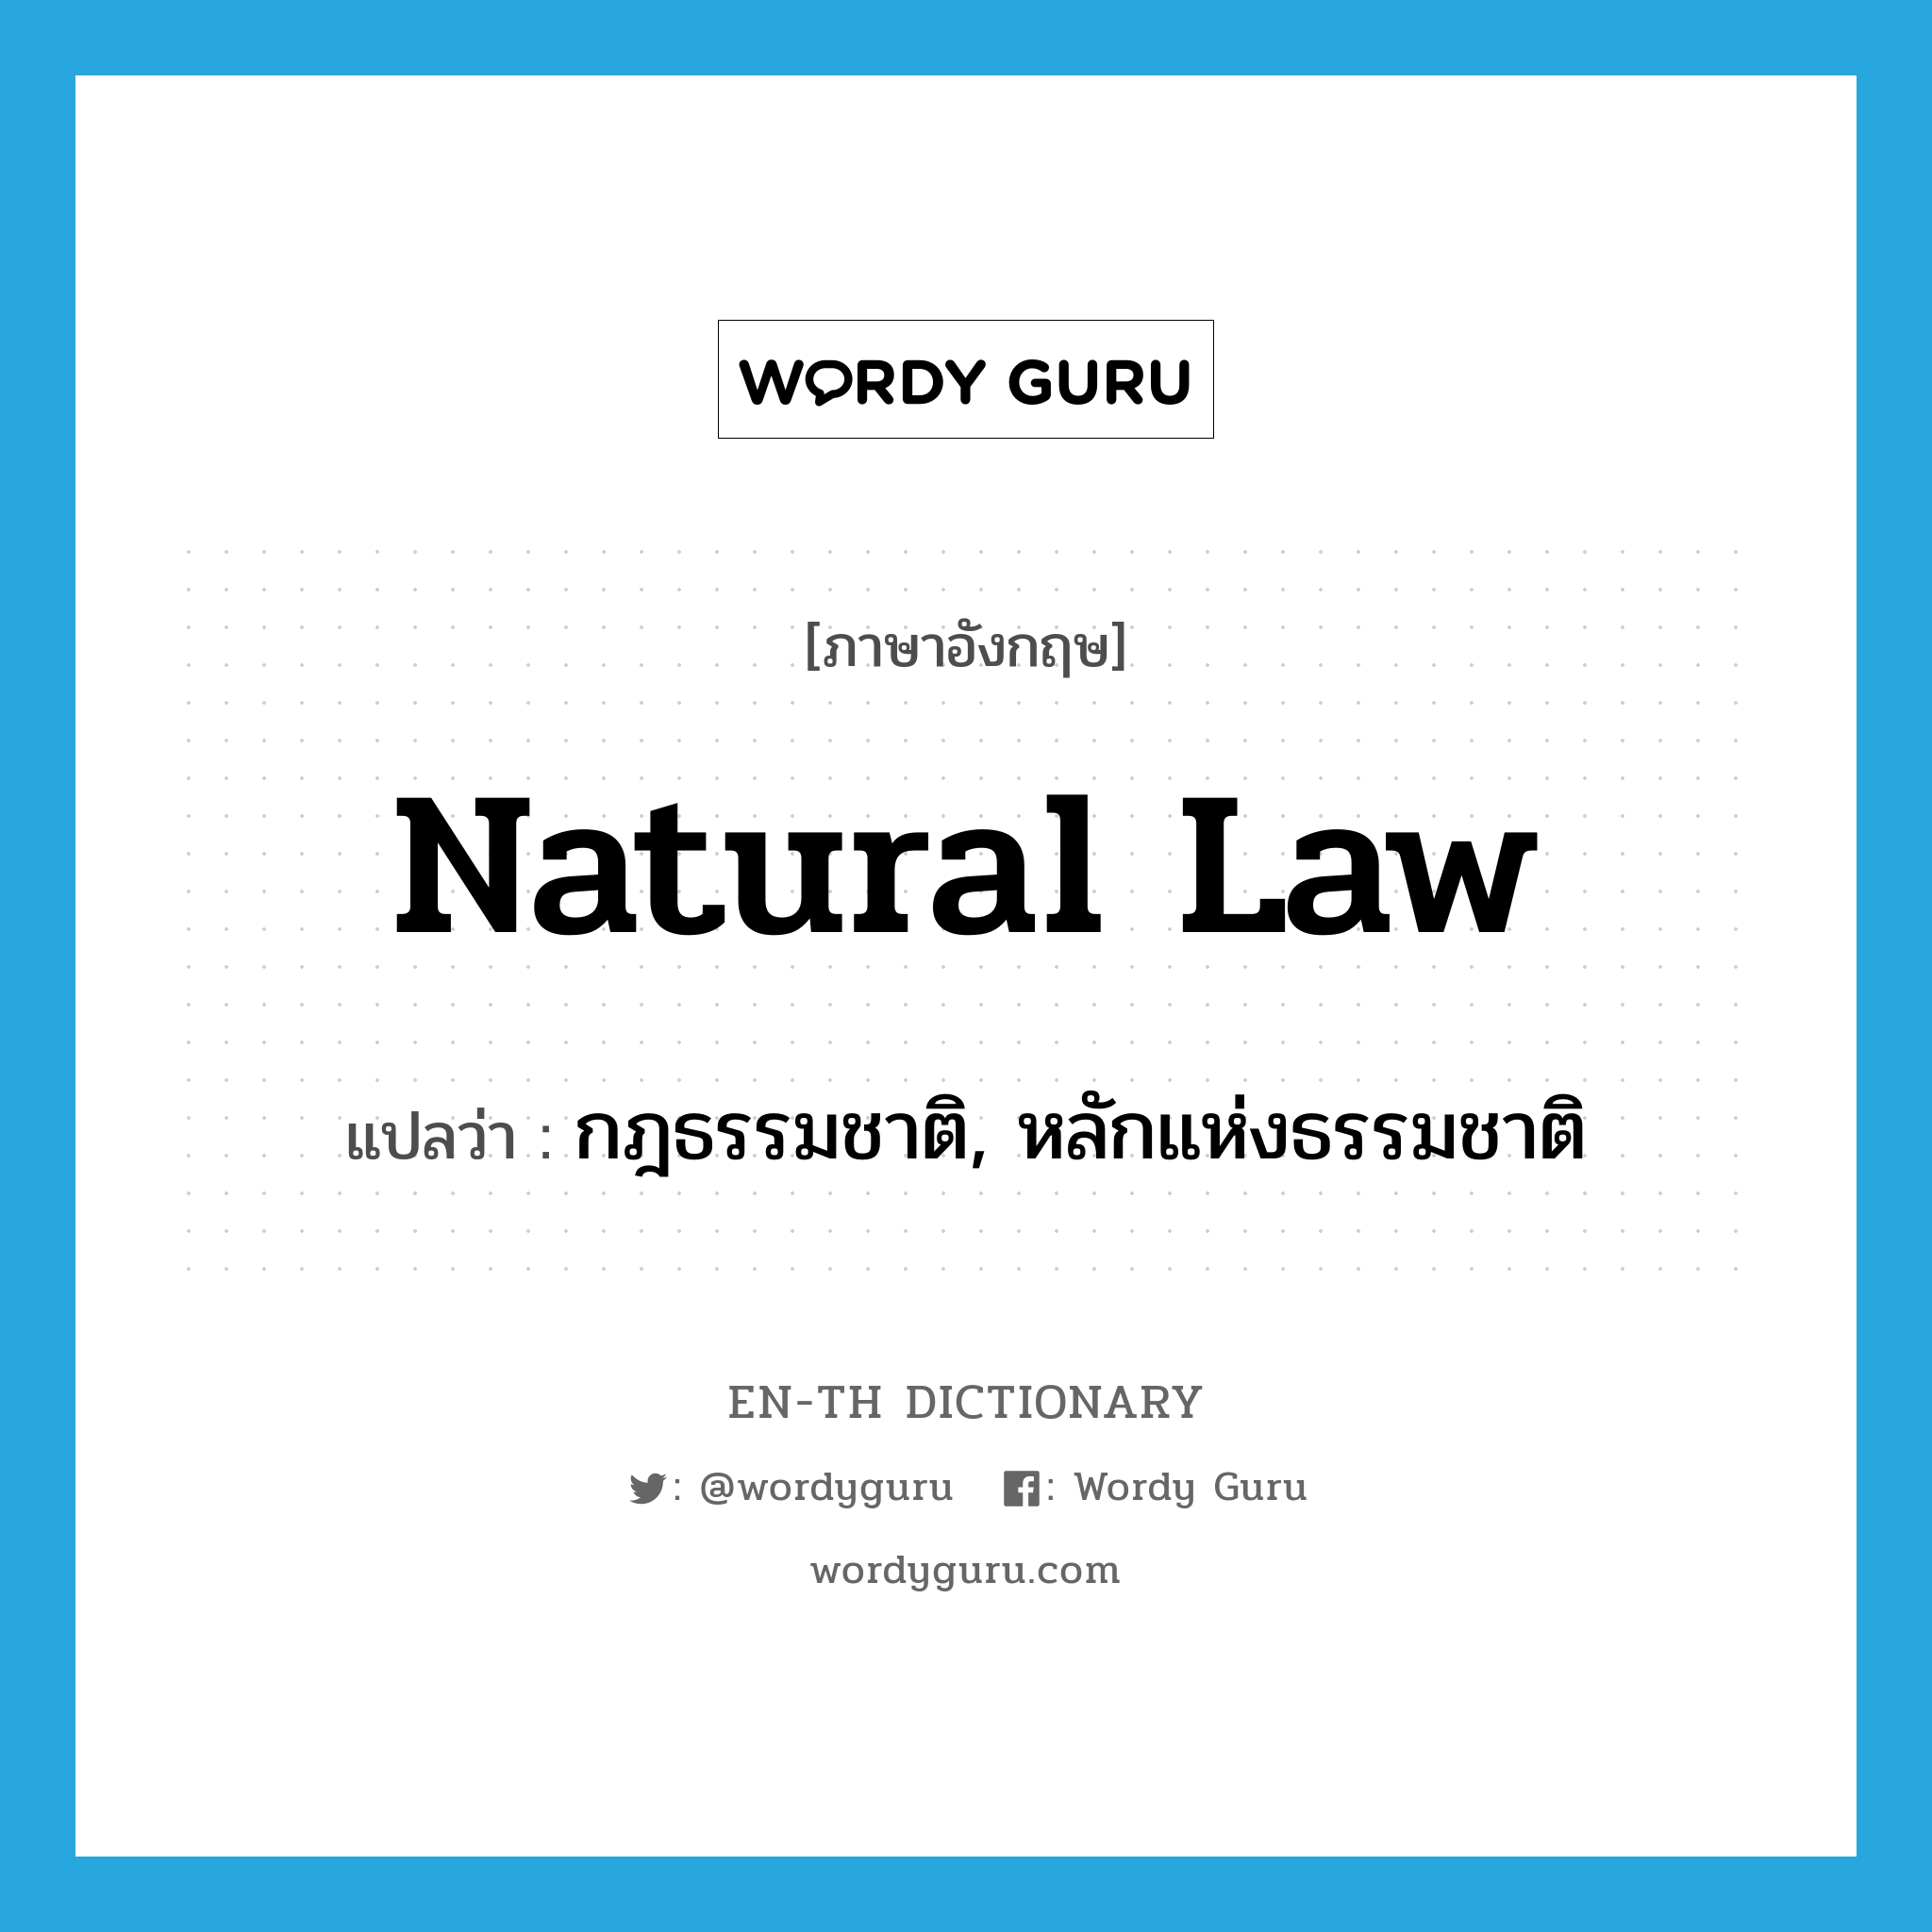 กฎธรรมชาติ, หลักแห่งธรรมชาติ ภาษาอังกฤษ?, คำศัพท์ภาษาอังกฤษ กฎธรรมชาติ, หลักแห่งธรรมชาติ แปลว่า natural law ประเภท N หมวด N